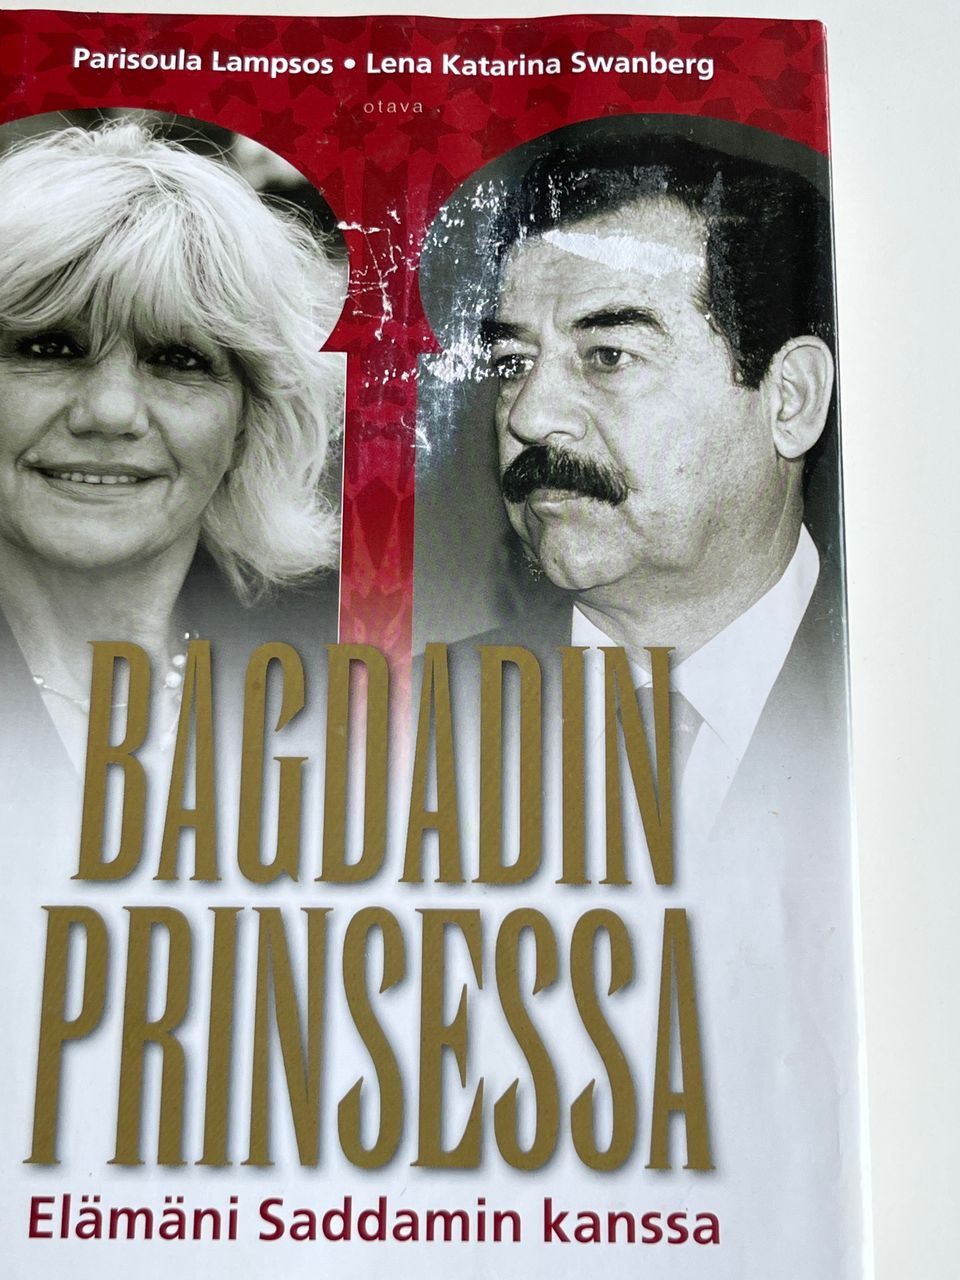 Bagdadin Prinsessa. Elämäni Saddamin kanssa.